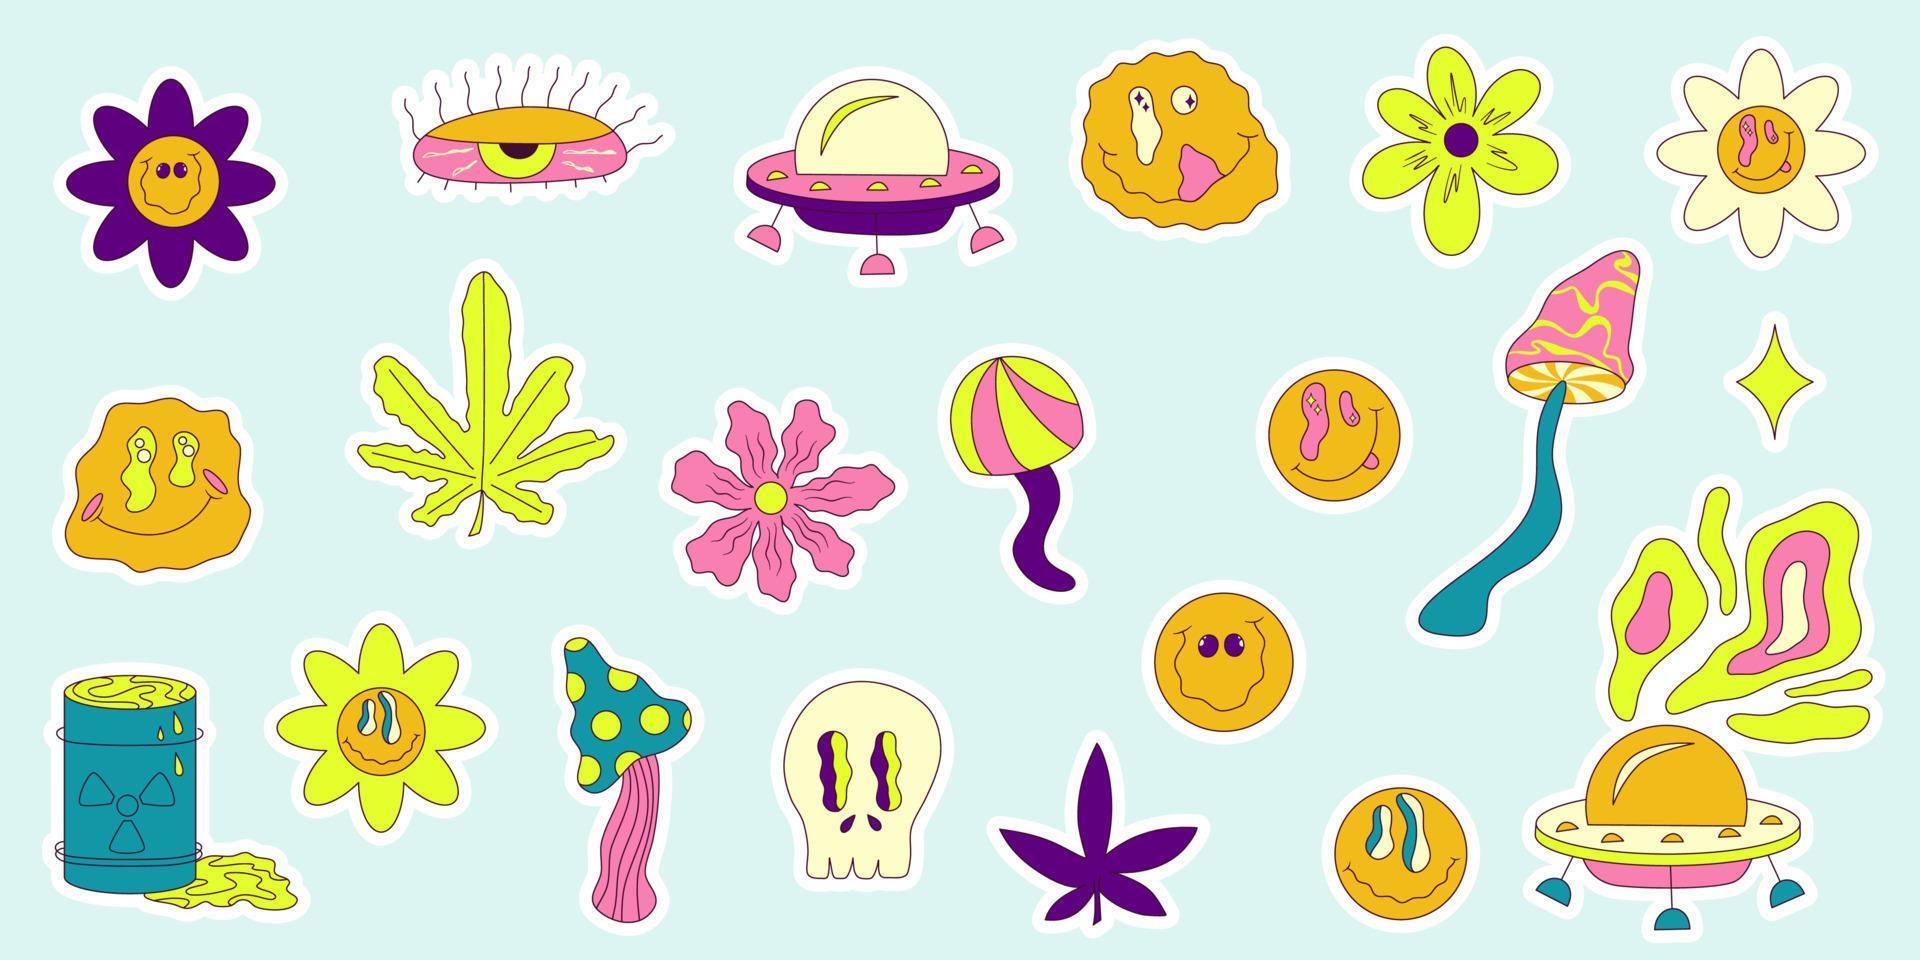 trippy leende klistermärke i popkonst y2k stil på färgglad bakgrund. gul emoji. tecknad vektorillustration. hipster trippy leende, blomma, ufo och cannabis klistermärke vektor